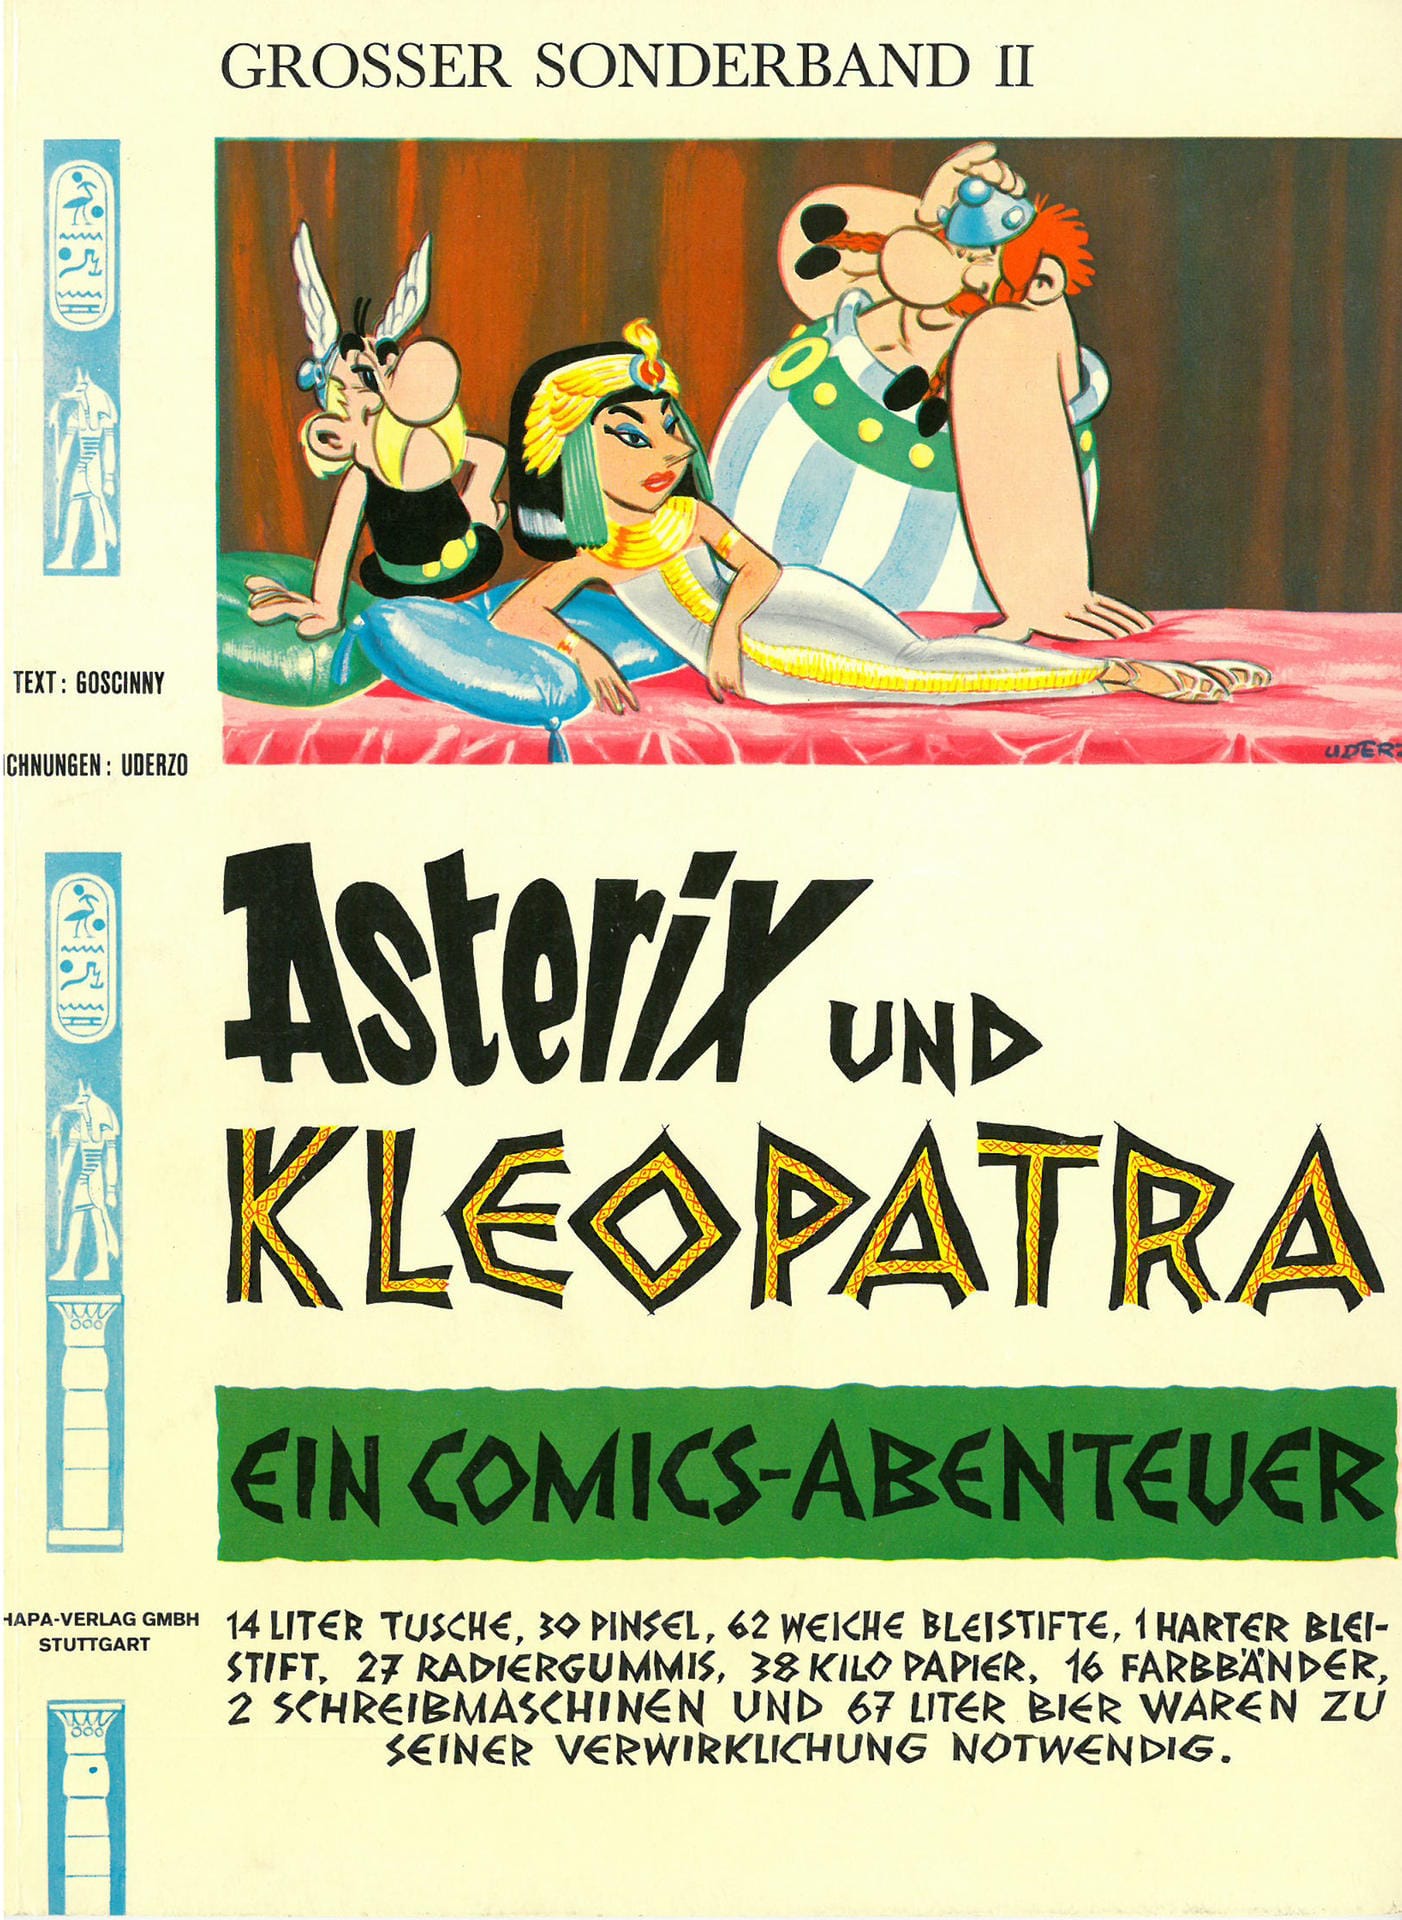 Die zweite Ausgabe: Asterix und Kleopatra. In dieser Ausgabe wettet Kleopatra mit Cäsar, in kürzester Zeit einen Palast bauen lassen zu können. Asterix und Obelix helfen dem Bauherren und den Bauarbeitern dabei und versorgen sie mit Zaubertrank.